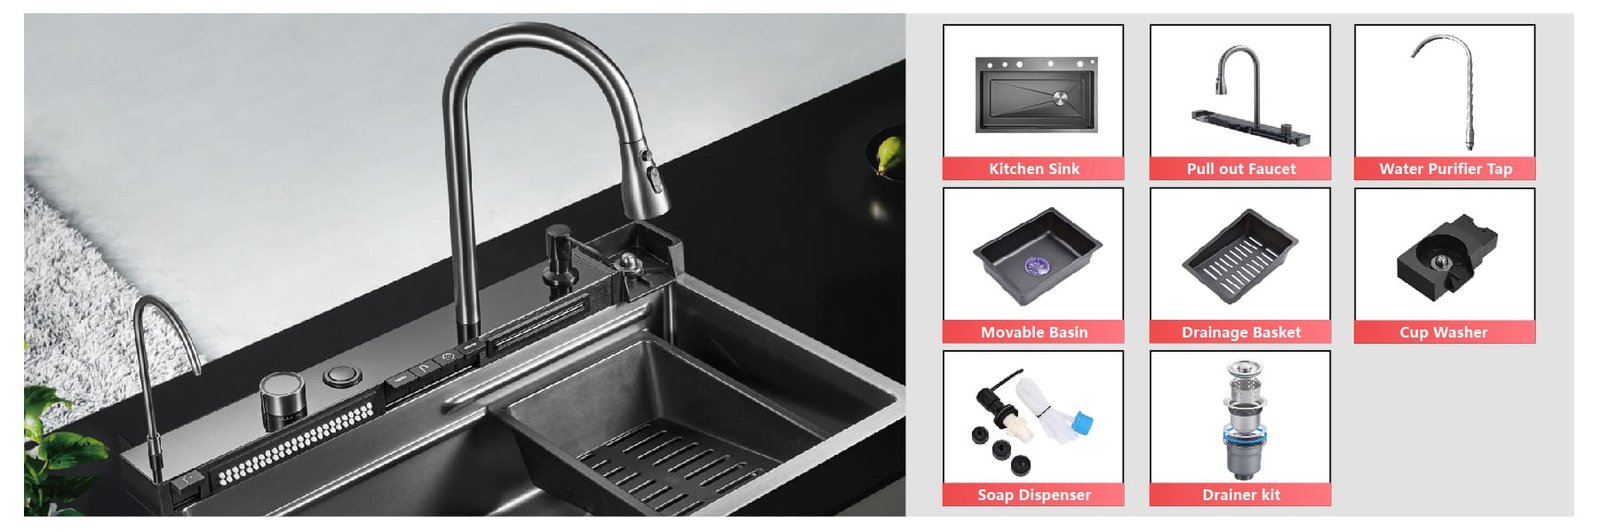 Fosilent Waterfall Kitchen Sink BZ9951 accessories fit